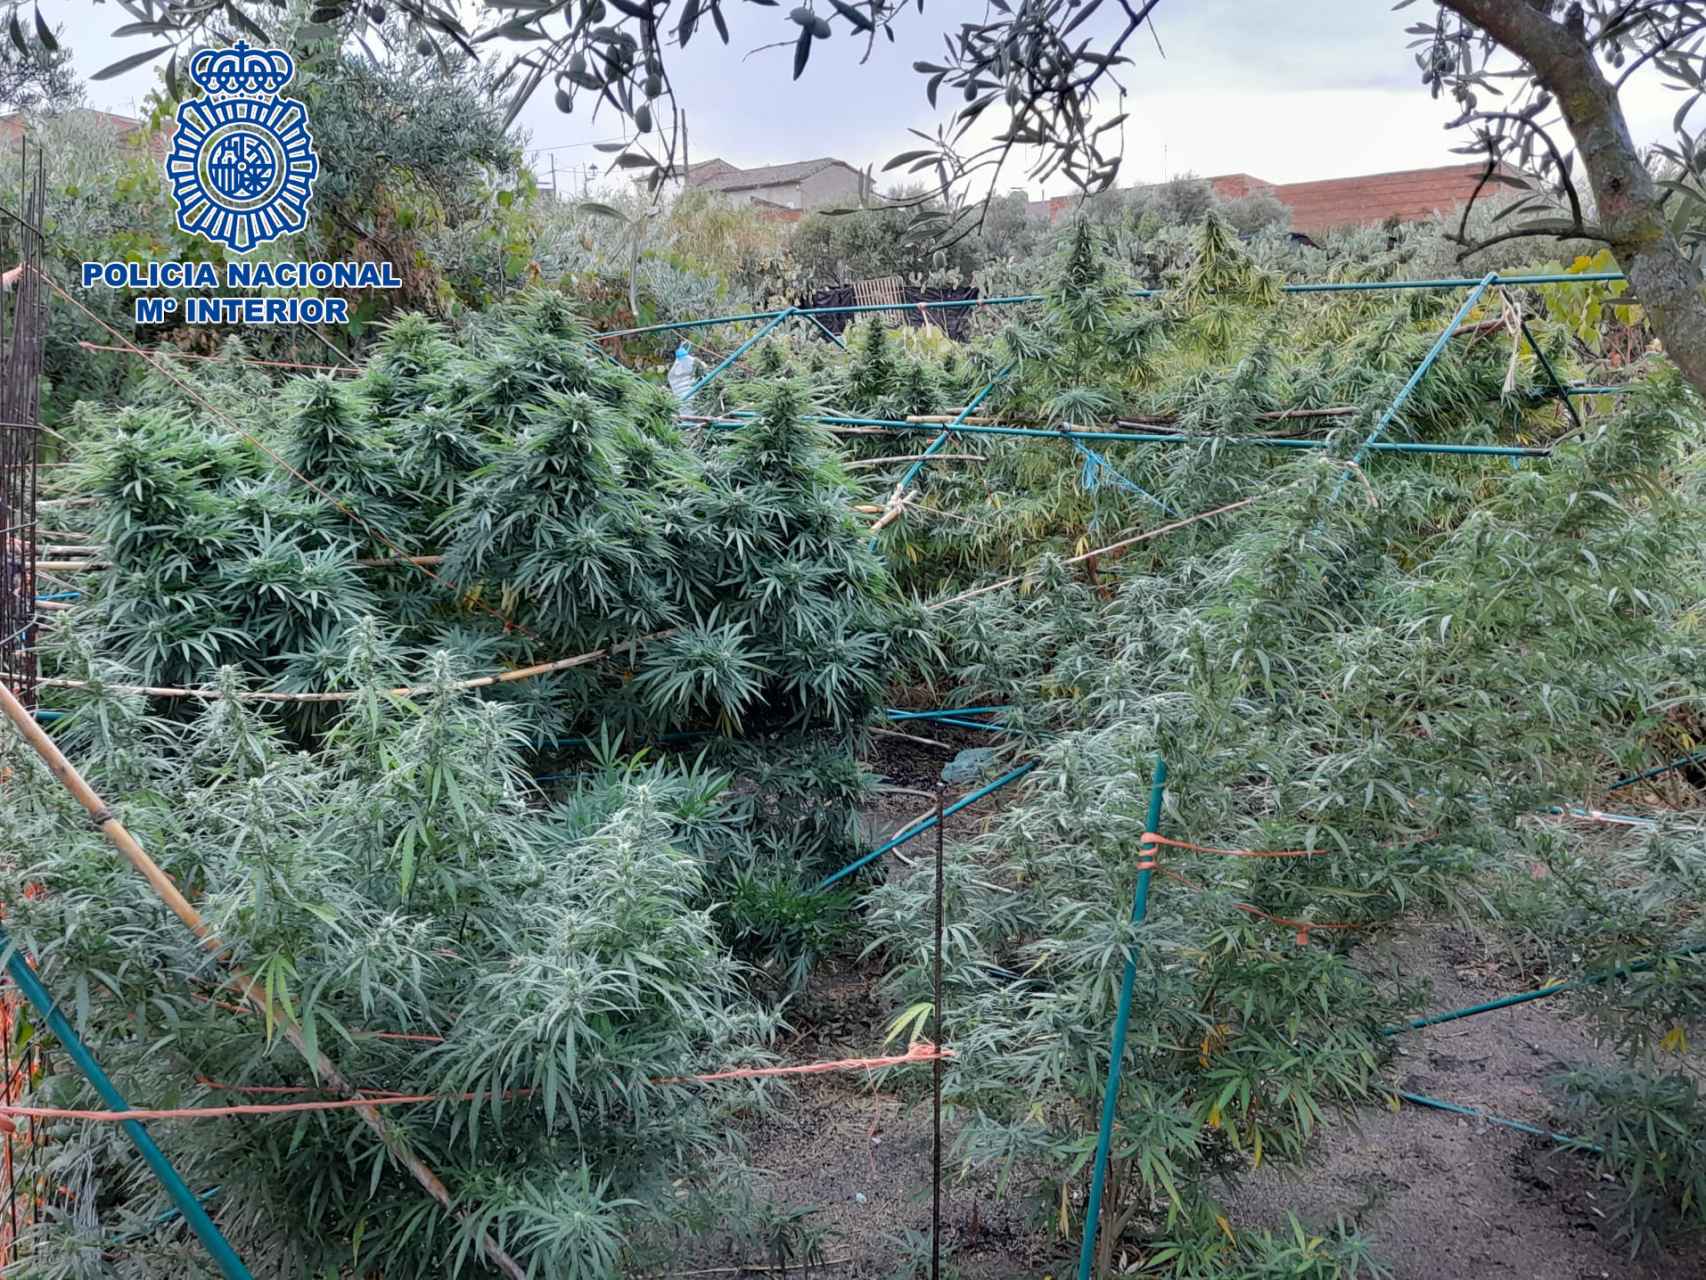 Las plantas de marihuana cultivadas en Velada eran de grandes dimensiones.